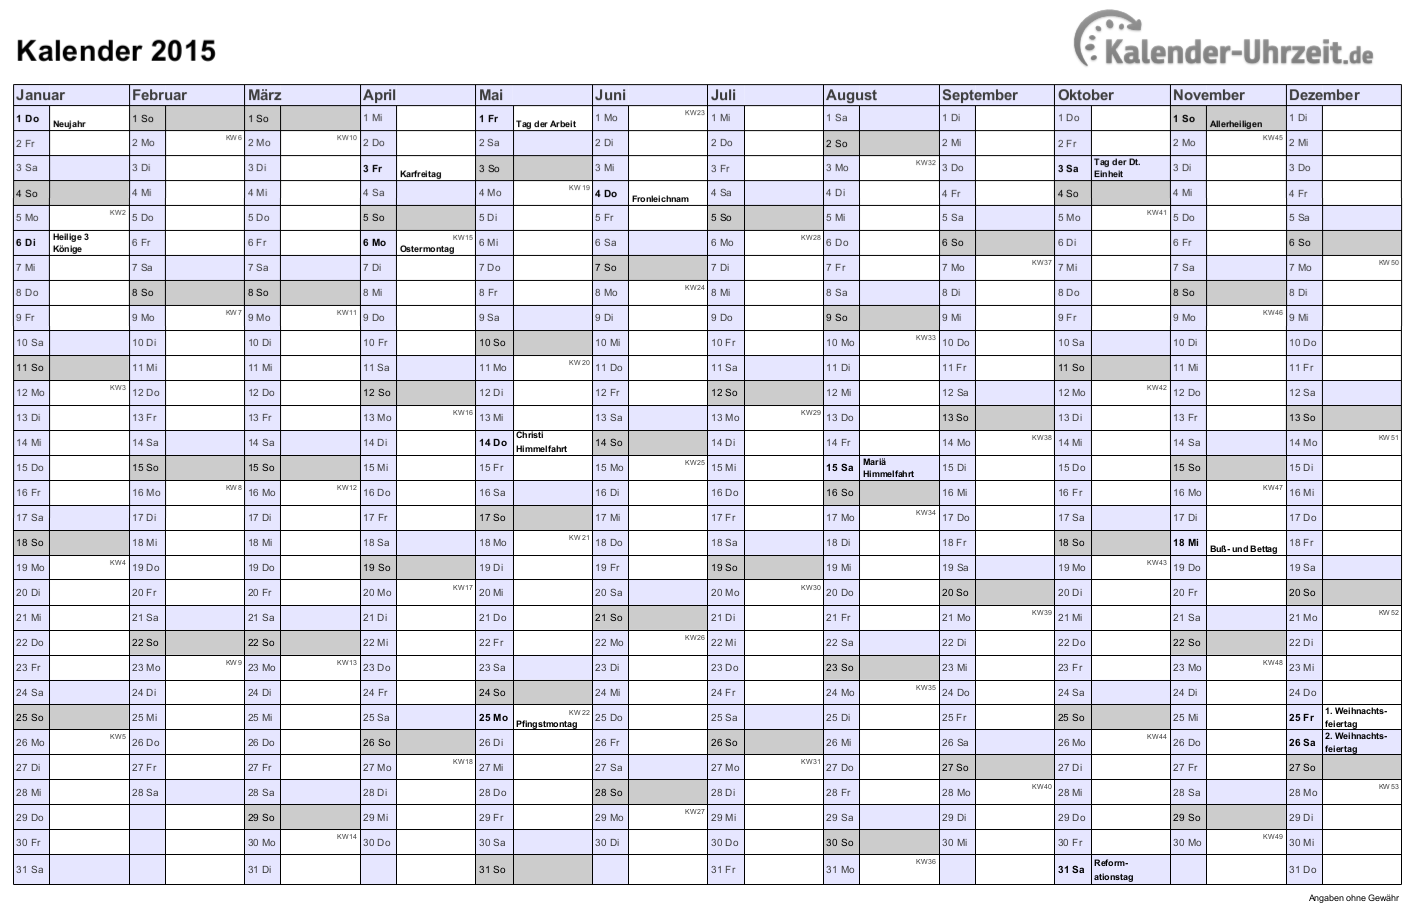 Kalender 2015 In Schwarz Weiss Druckerfreundlich A4 Querformat Einseitig Kalender 2015 Zu In 2020 Kalender 2015 Kalender Feiertage Kalender Zum Ausdrucken